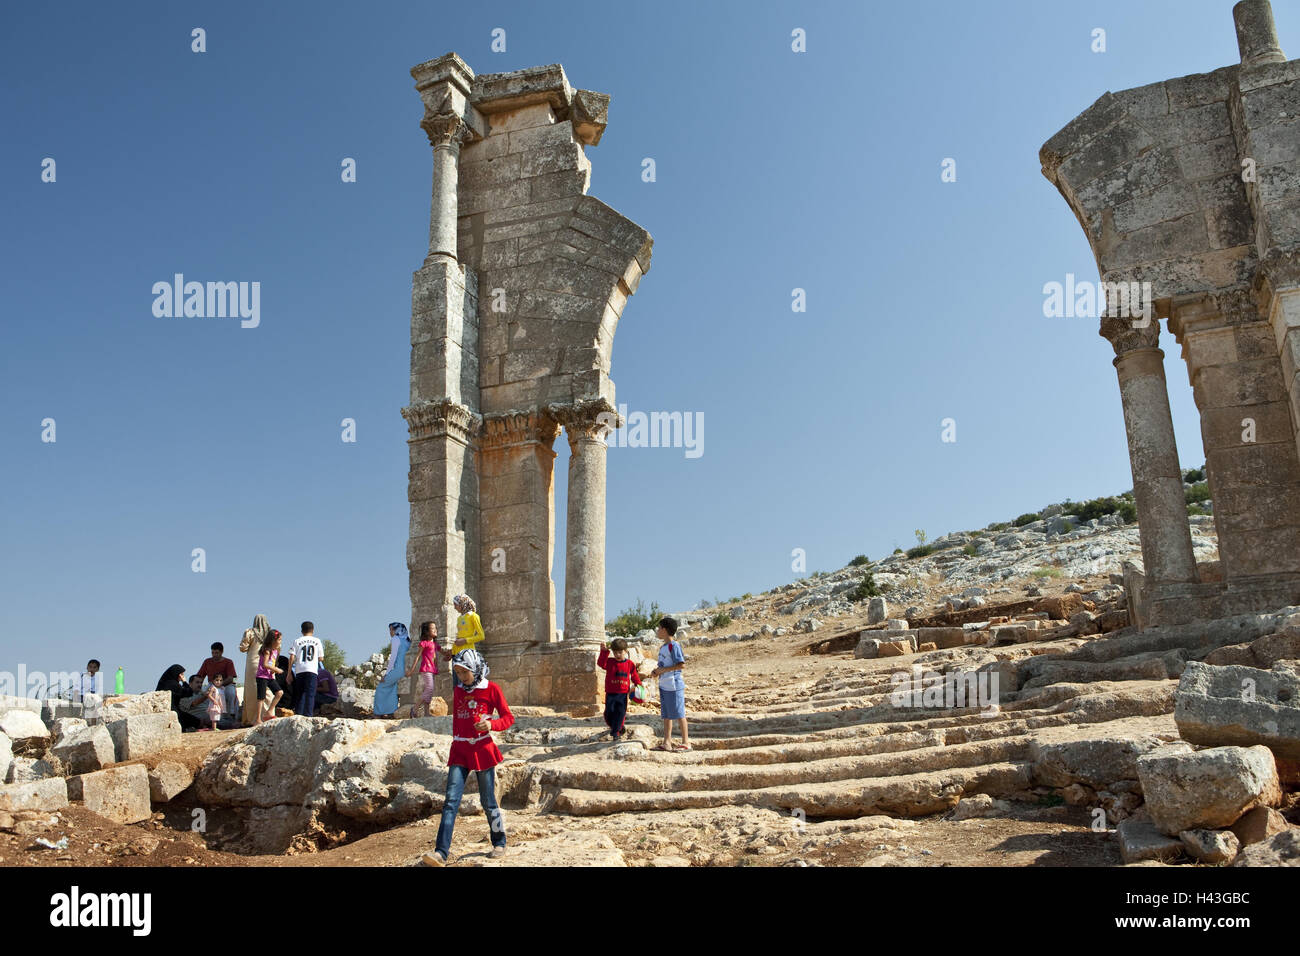 La Syrie, Qalaat Siman, ruine, site, tourisme Banque D'Images